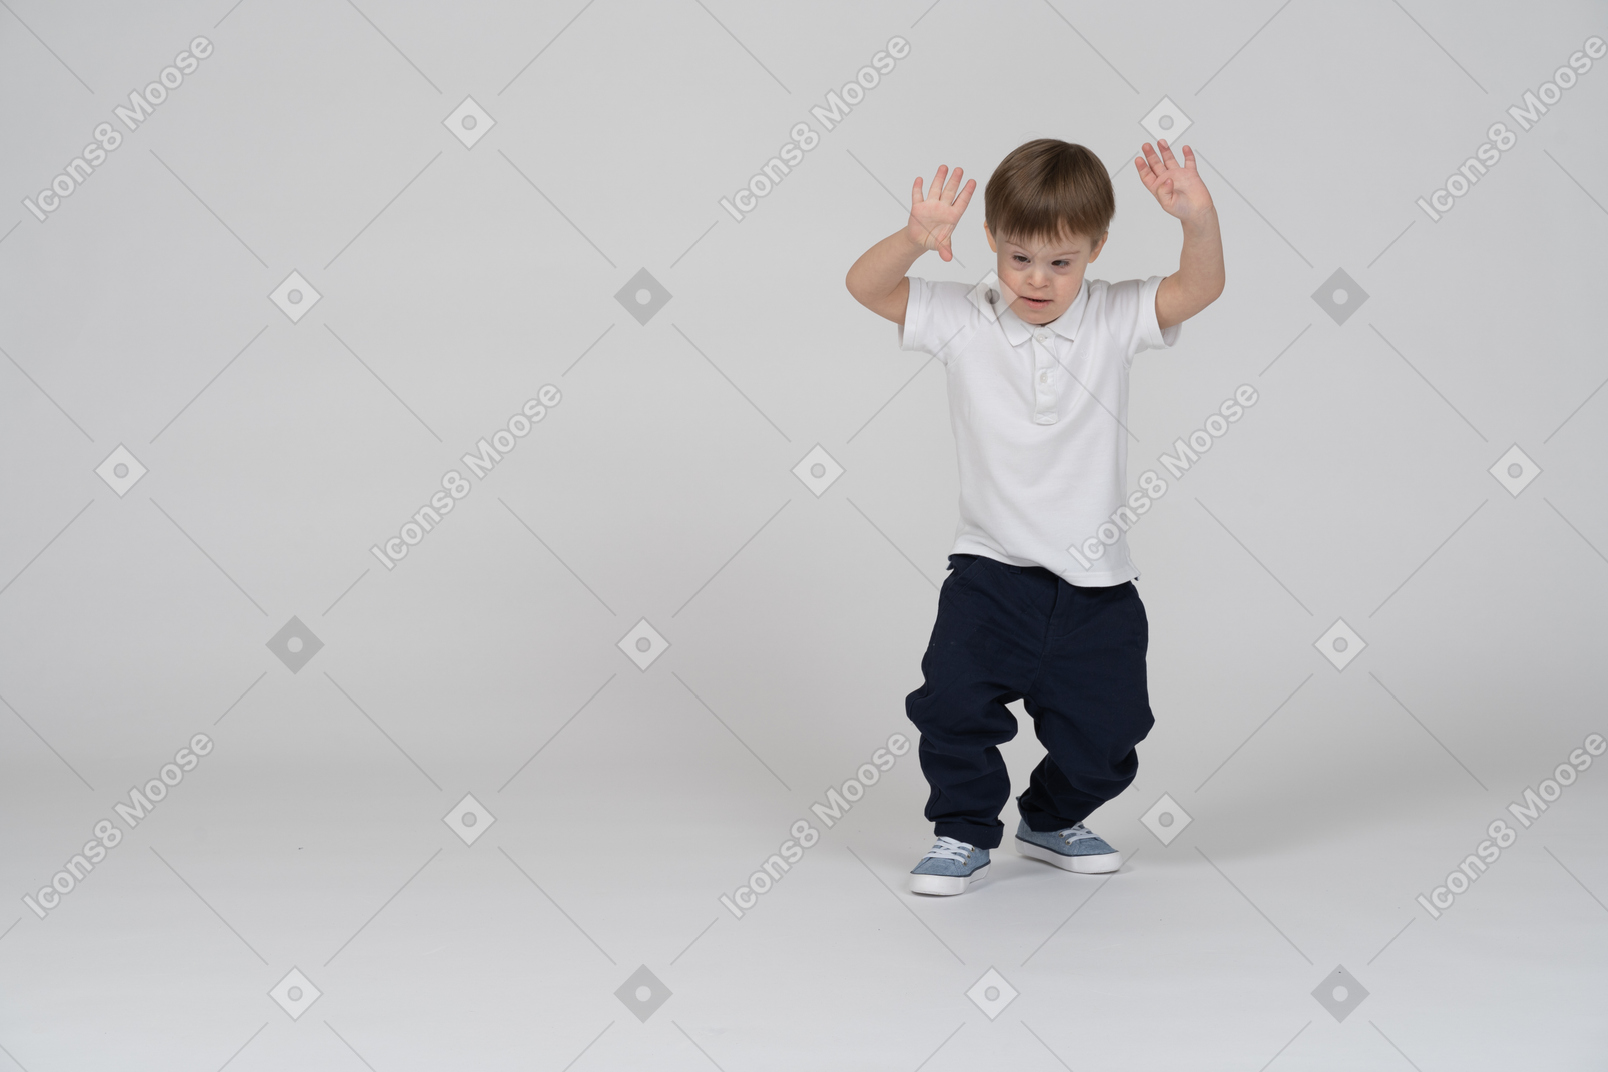 一个男孩举起双手微微蹲下的正面图